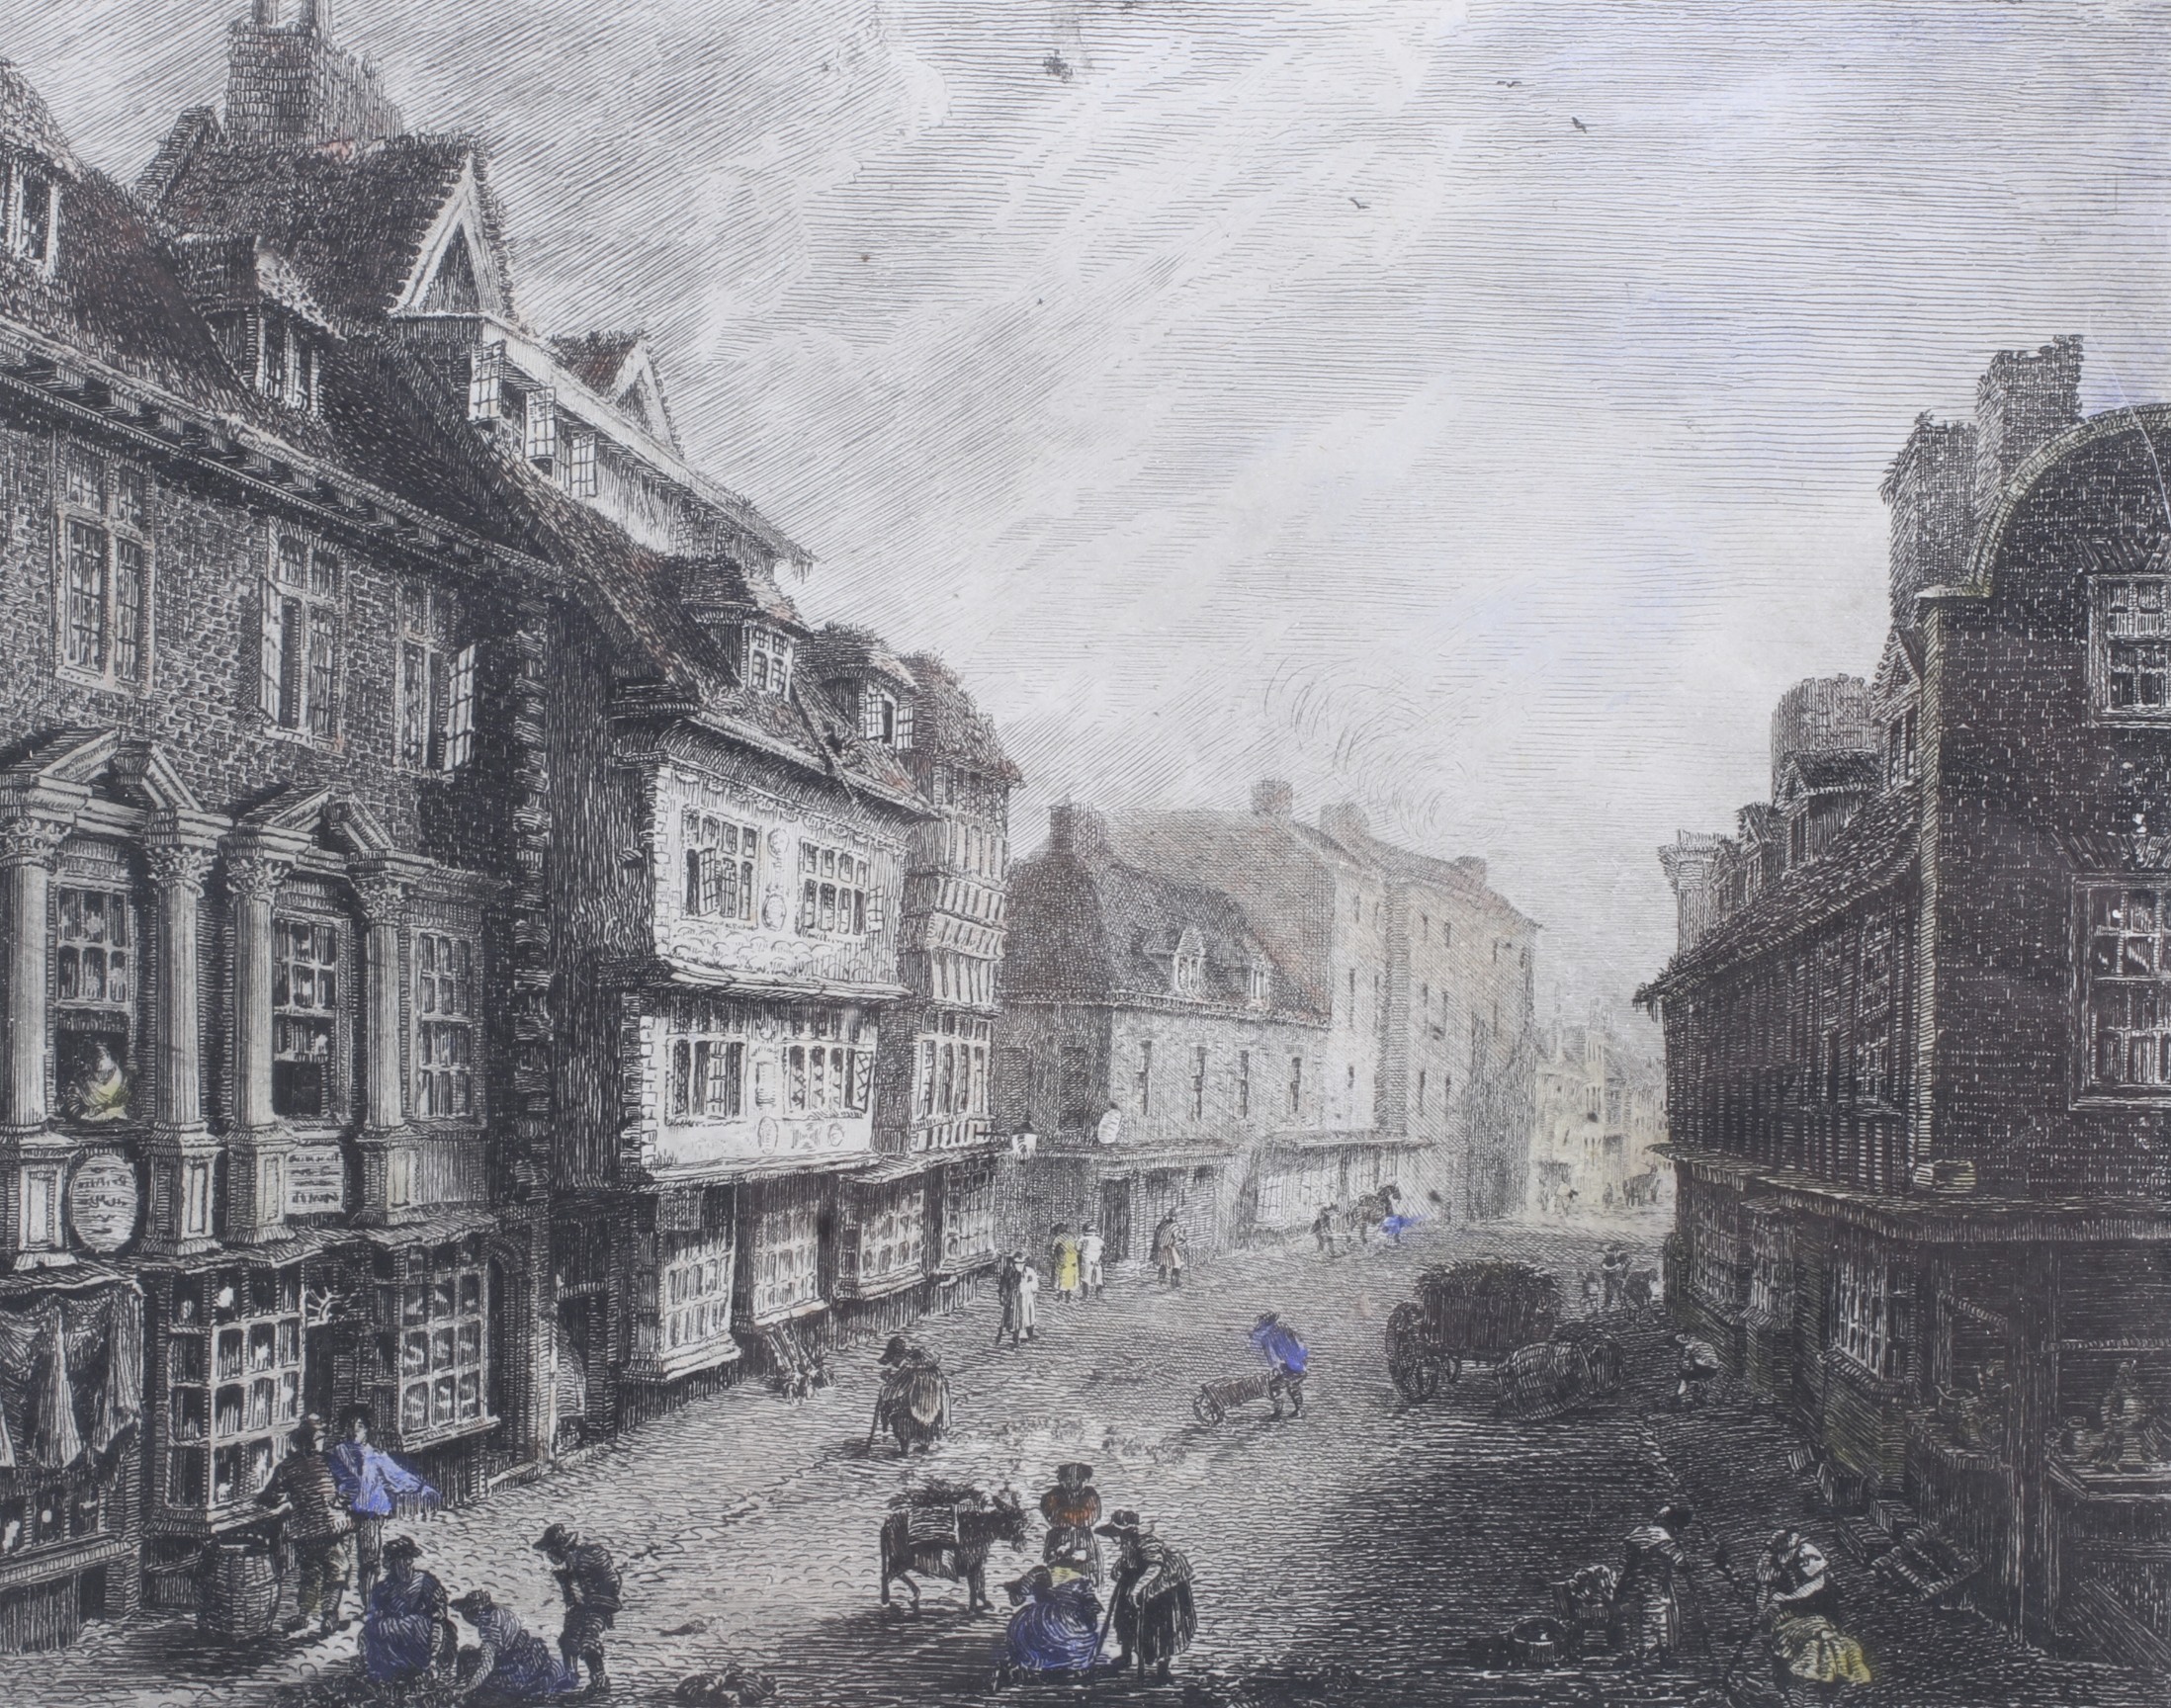 Rev E P Owen, two etchings. 'Mardol, Shrewsbury' and 'The High Street, Shrewsbury', 14cm x 17. - Image 3 of 3